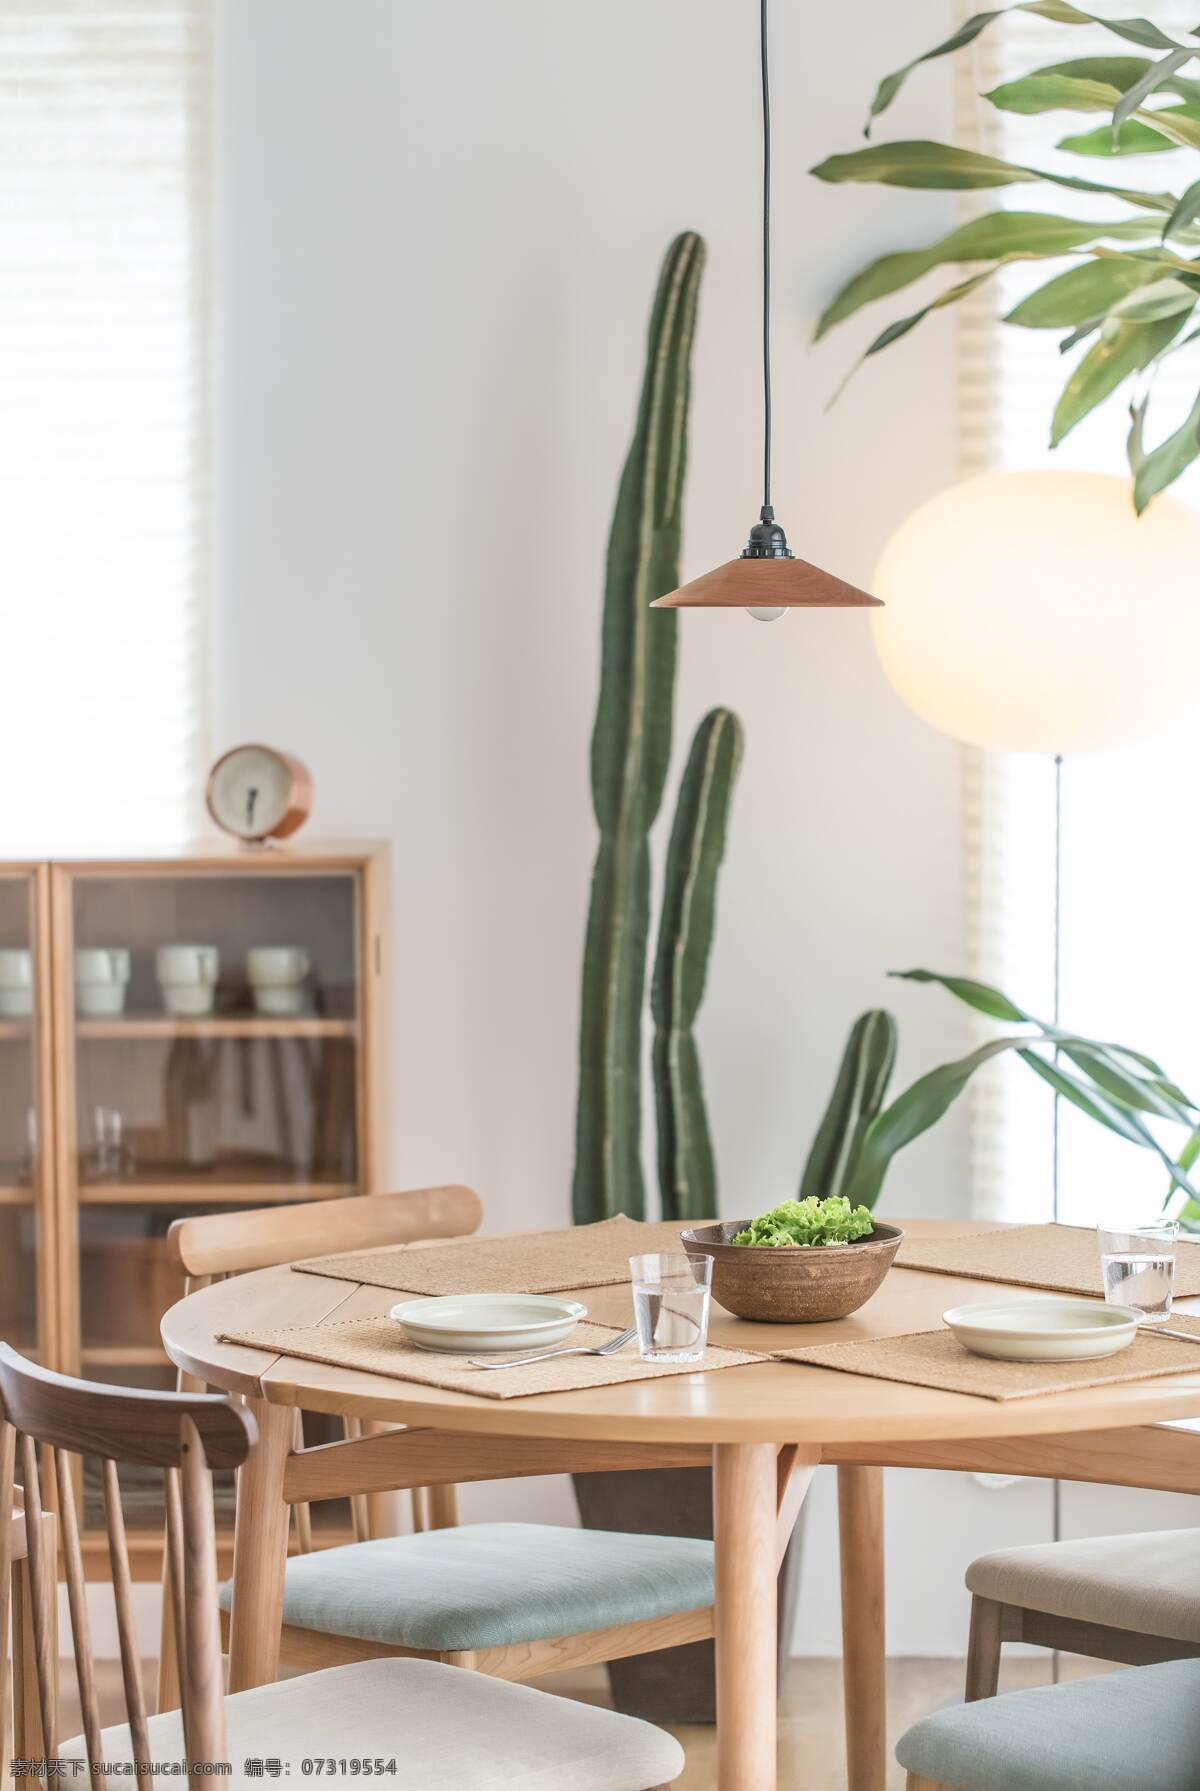 温馨的家 北欧 餐桌 装修 室内 灯 植物 仙人掌 文艺 生活百科 生活素材